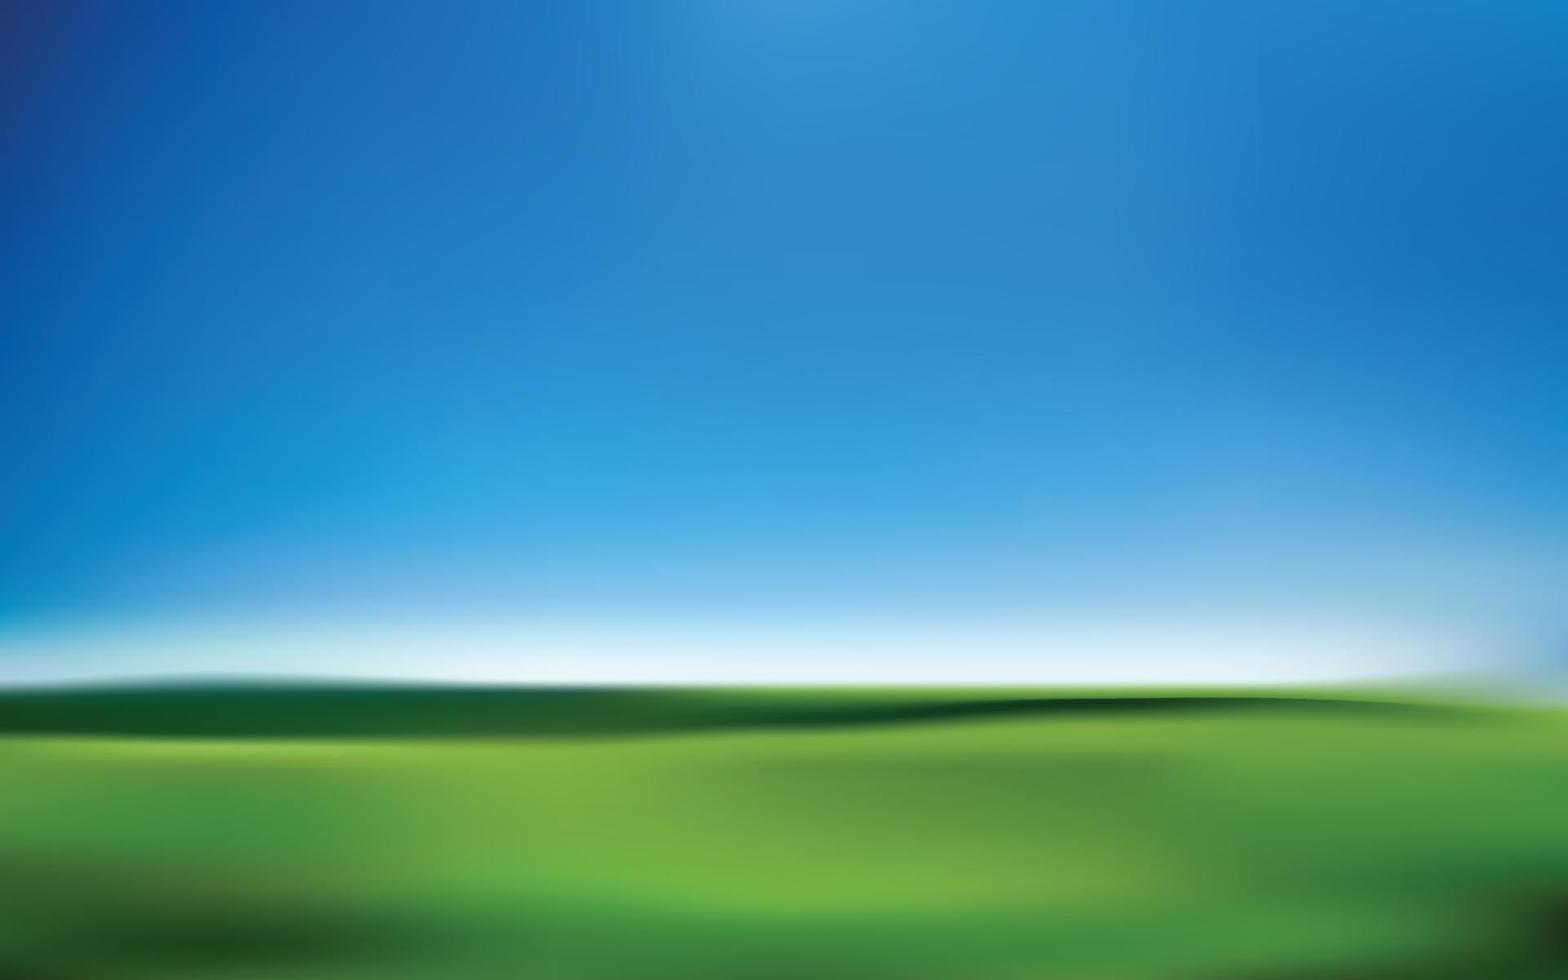 astratto sfondo con verde erba e blu cielo, vettore illustrazione.